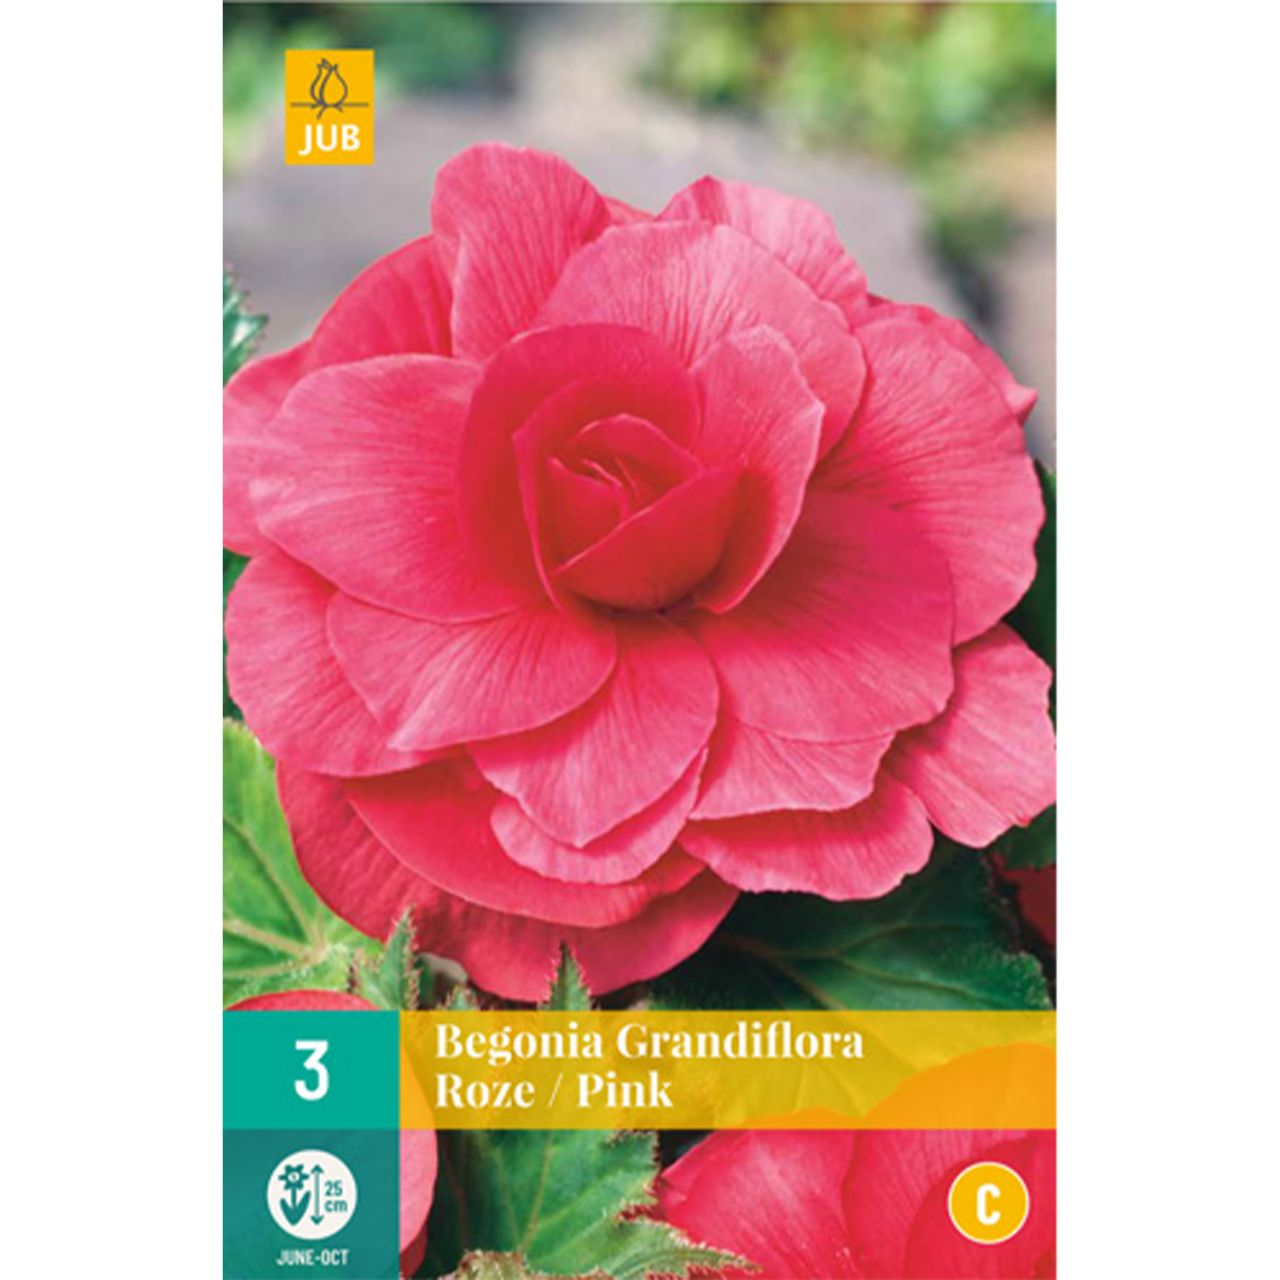  Riesenblütige Begonie 'Grandiflora Rosa' - 3 Stück - Begonia Grandiflora